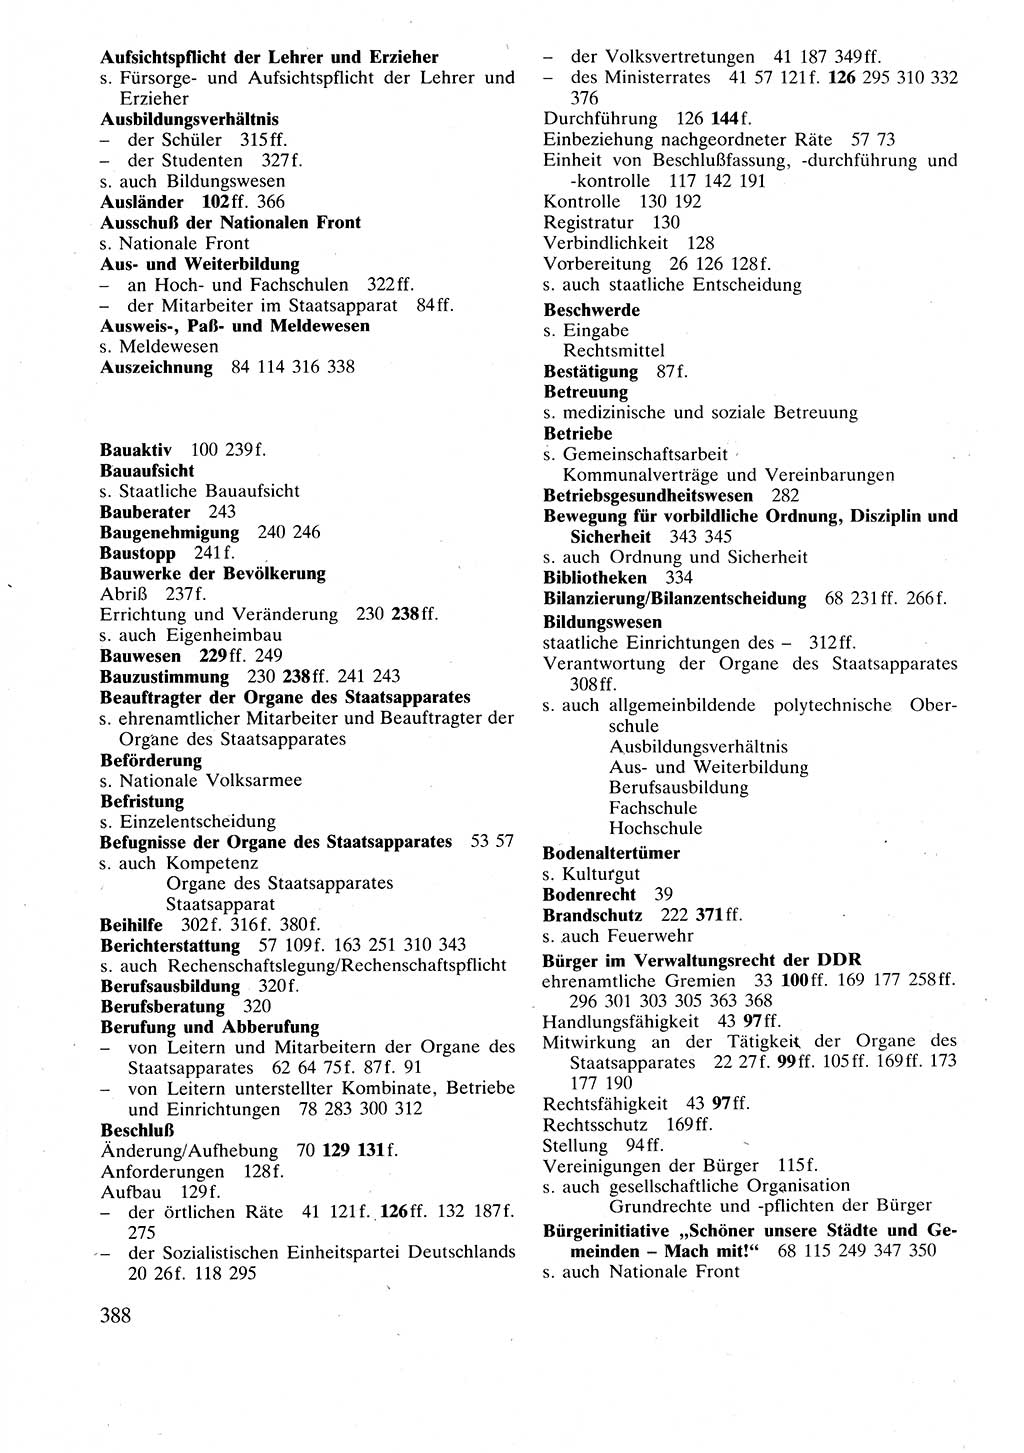 Verwaltungsrecht [Deutsche Demokratische Republik (DDR)], Lehrbuch 1988, Seite 388 (Verw.-R. DDR Lb. 1988, S. 388)